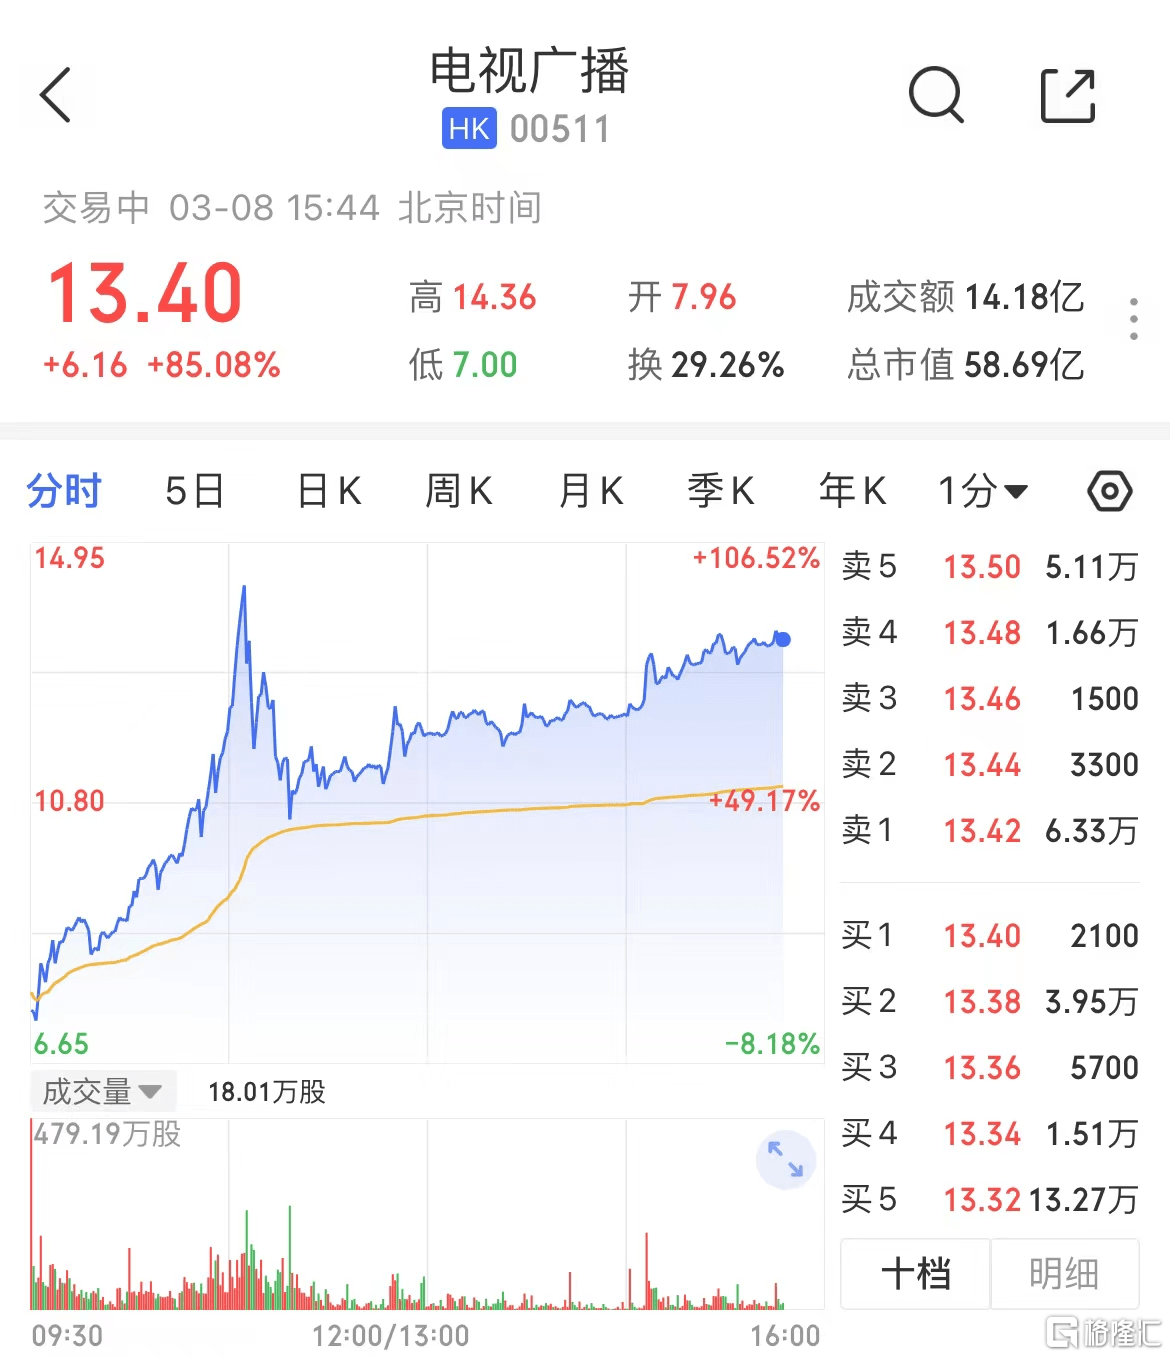 淘宝直播卖货
:TVB淘宝直播带货<strong></p>
<p>淘宝直播卖货
</strong>，影视直发ETF涨囤货土特产2.25%